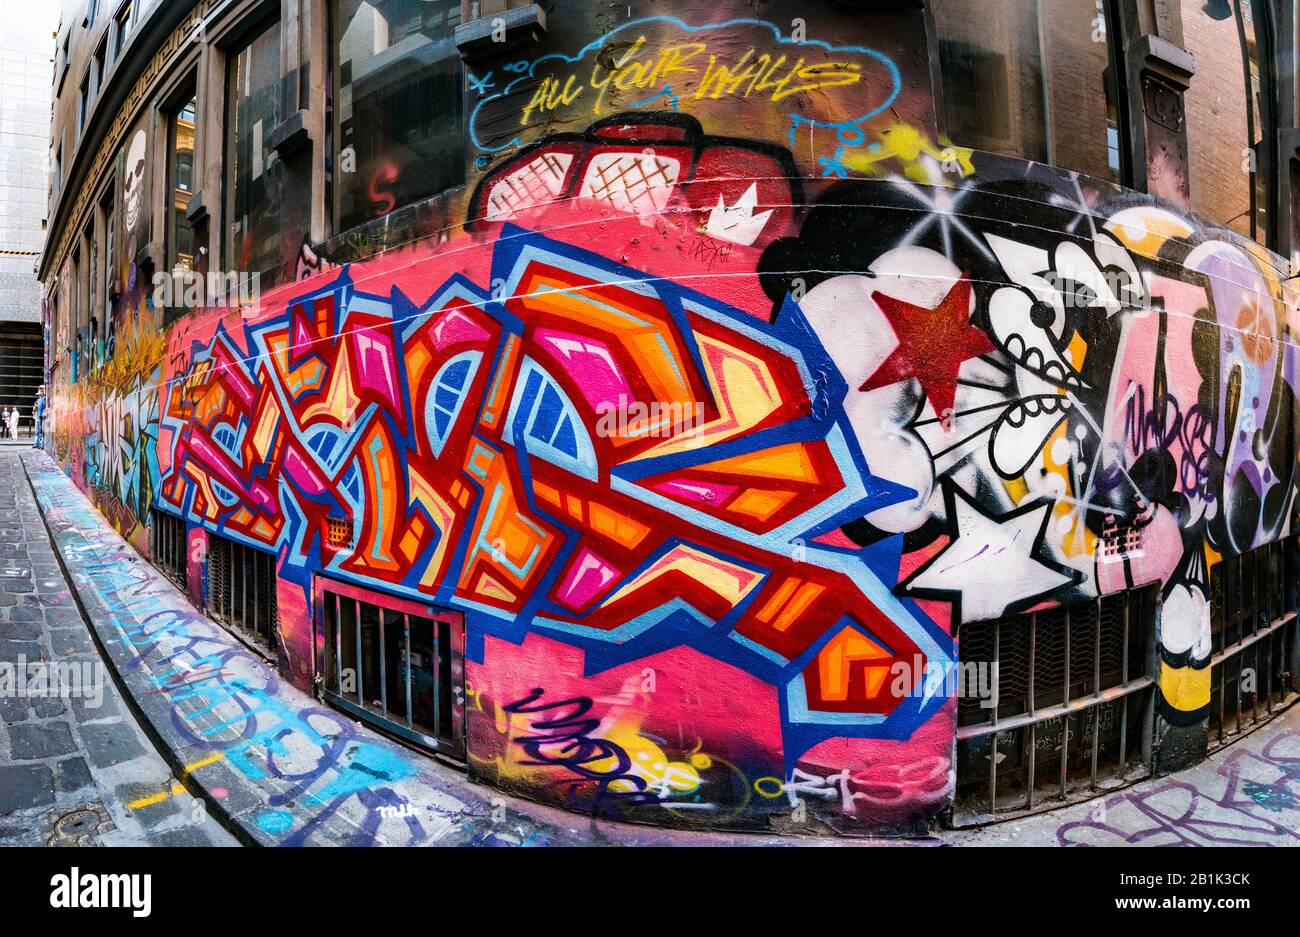 Bunt gestaltete, geometrische Graffiti in gepflasterter steinerner Hintergasse Hosier Street, Melbourne Lanes, Melbourne, Victoria, Australien Stockfoto